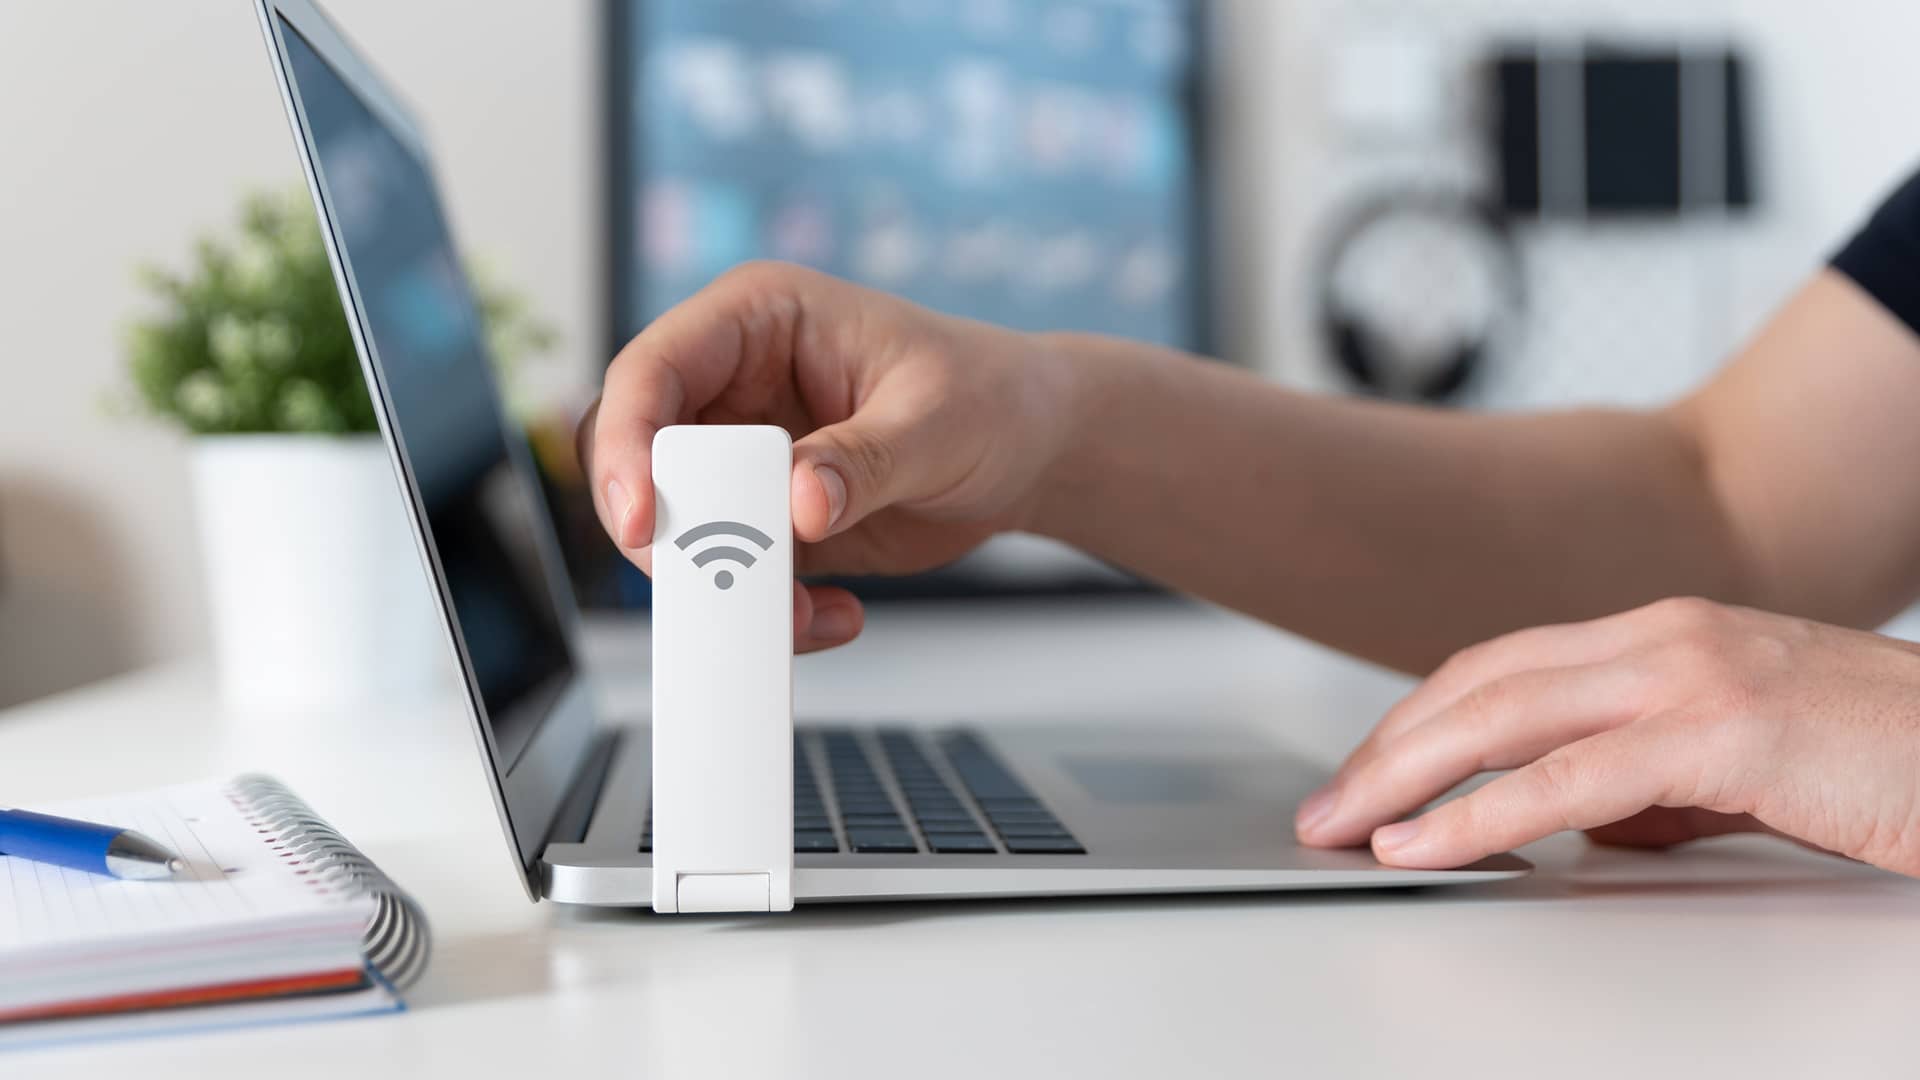 WiFi portátil Vodafone: ¿es posible contratar un router portátil?